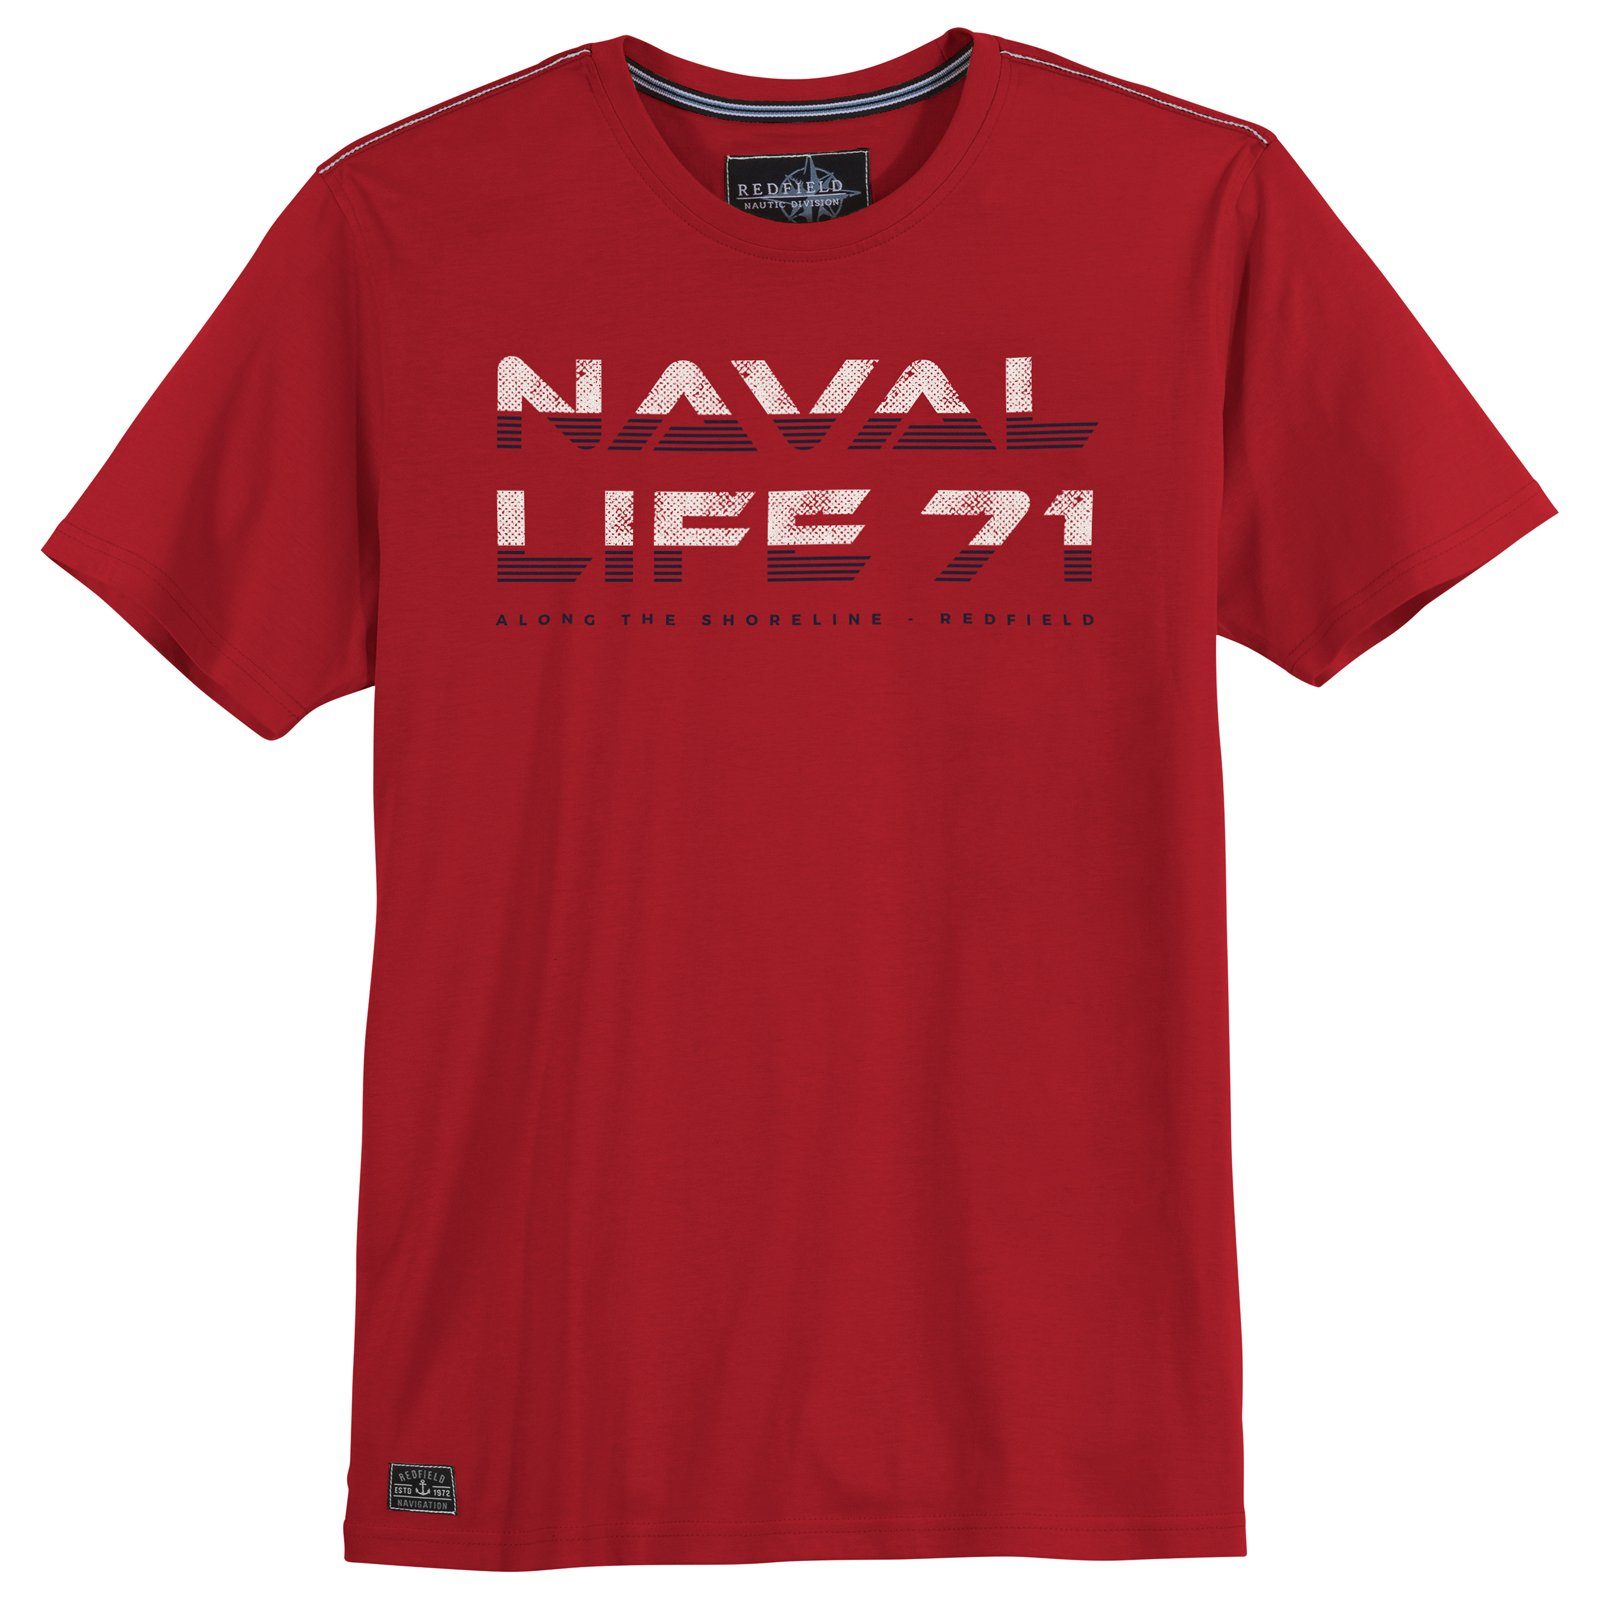 redfield Rundhalsshirt Große Größen Herren Redfield T-Shirt Naval Life 71 rot